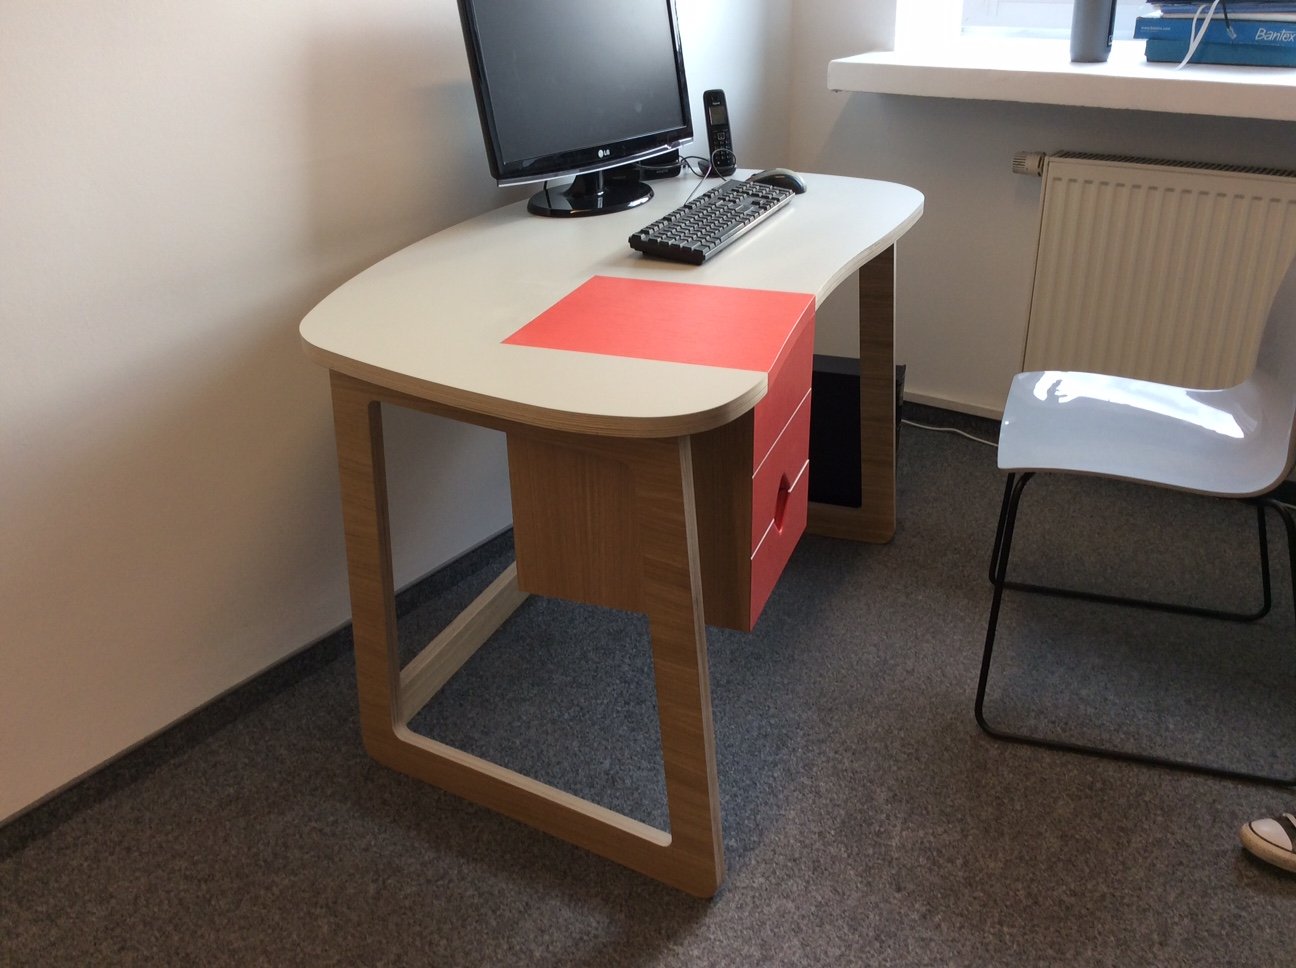 biurko o ciekawym kształcie blatu, ergonomiczny kształt pozwalający na wygodną pracę przy komputerze